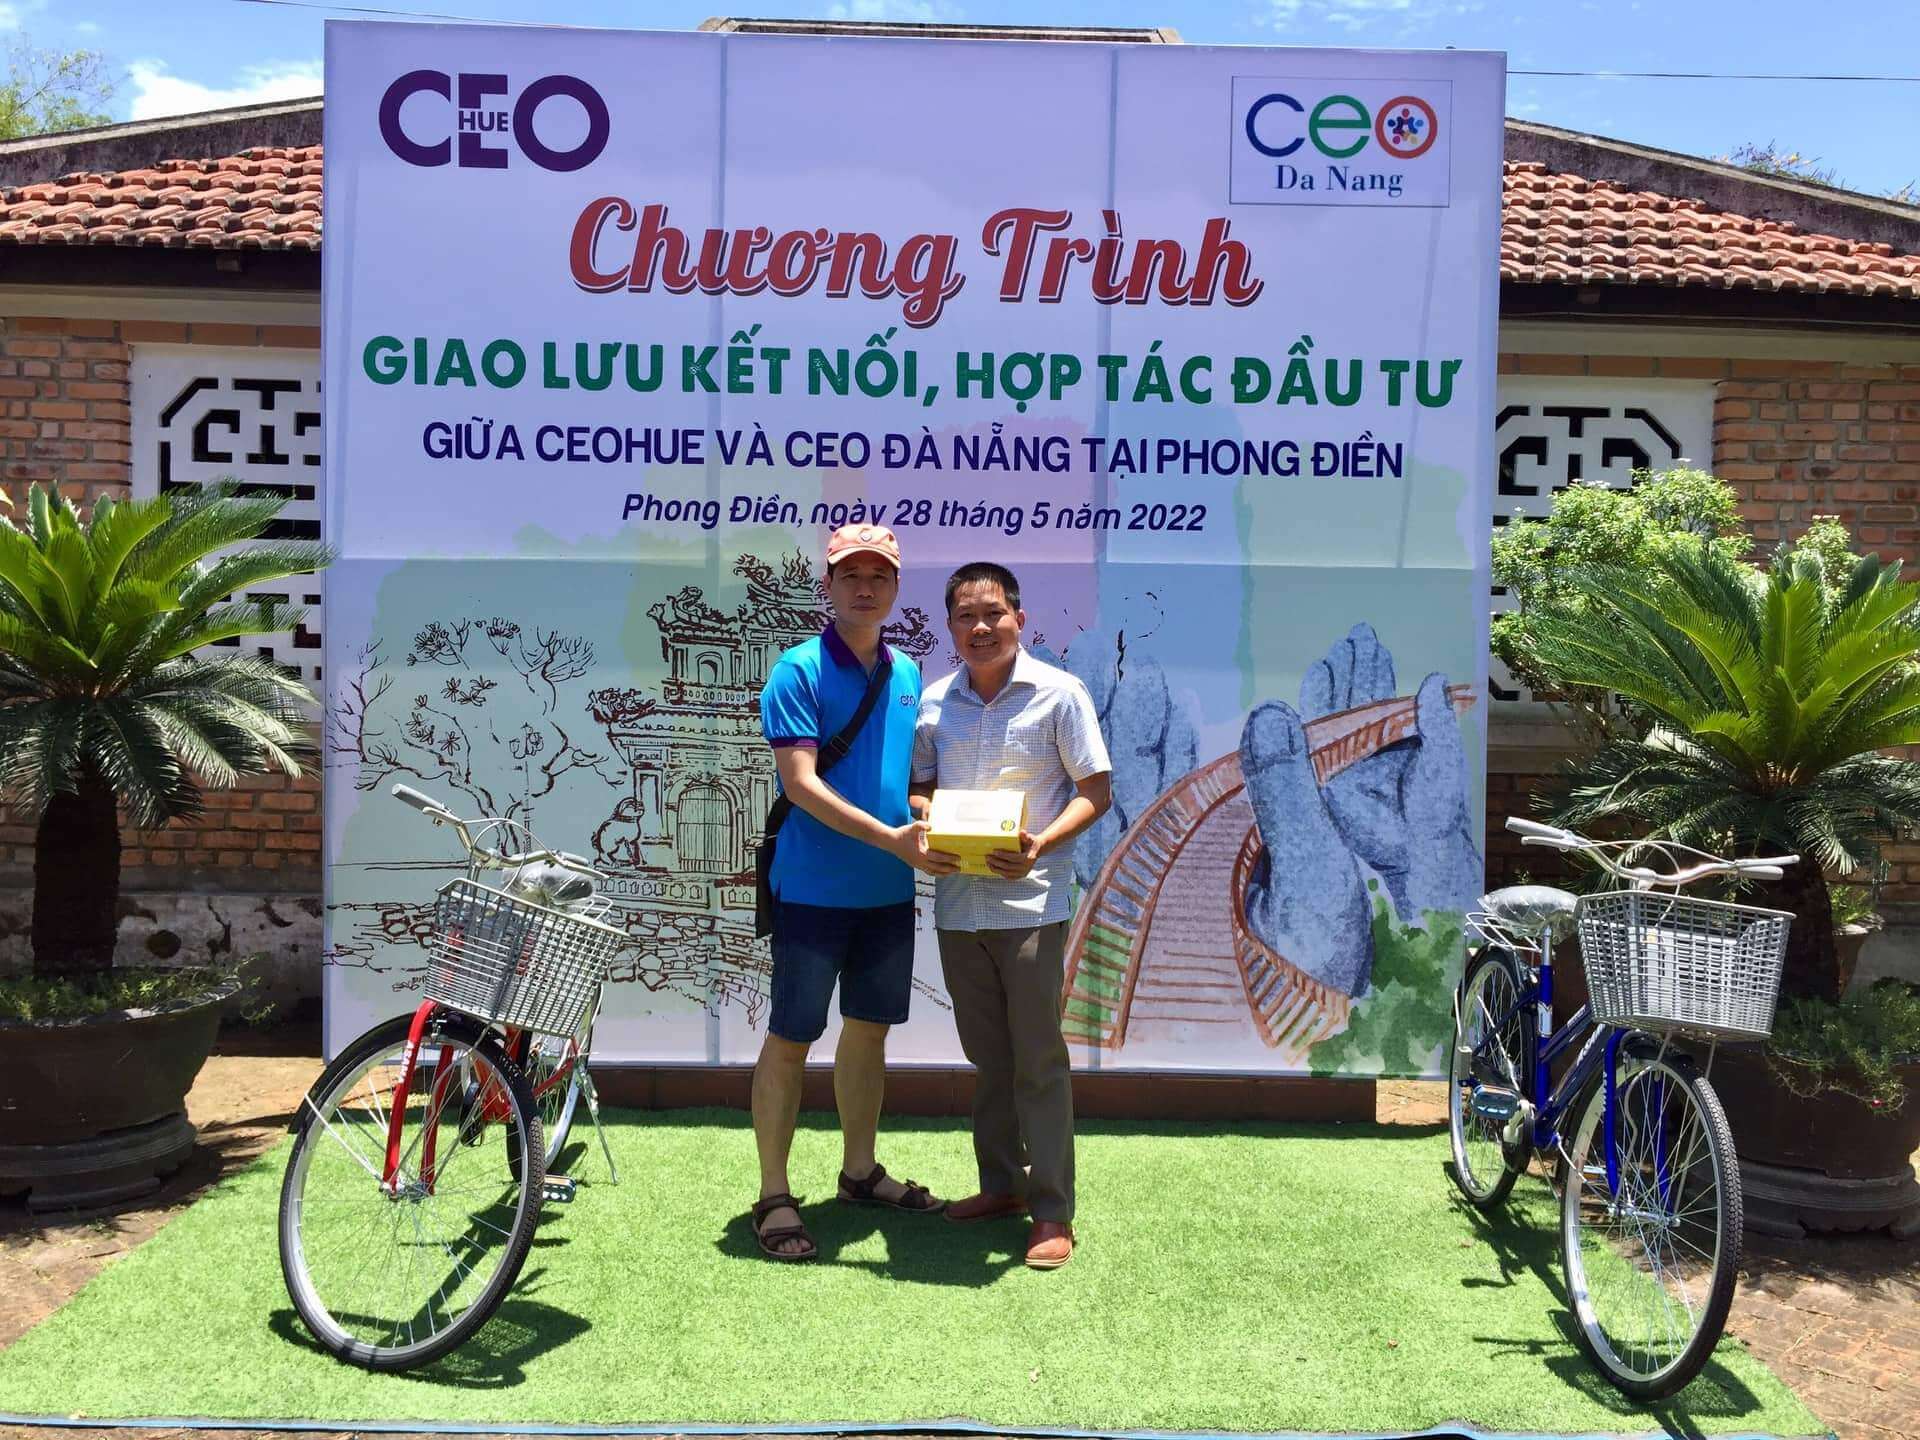 Câu lạc bộ CEOHUE tặng 2 chiếc xe đạp và 2 bộ loa dành cho các hướng dẫn viên của Làng Cổ Phước Tích